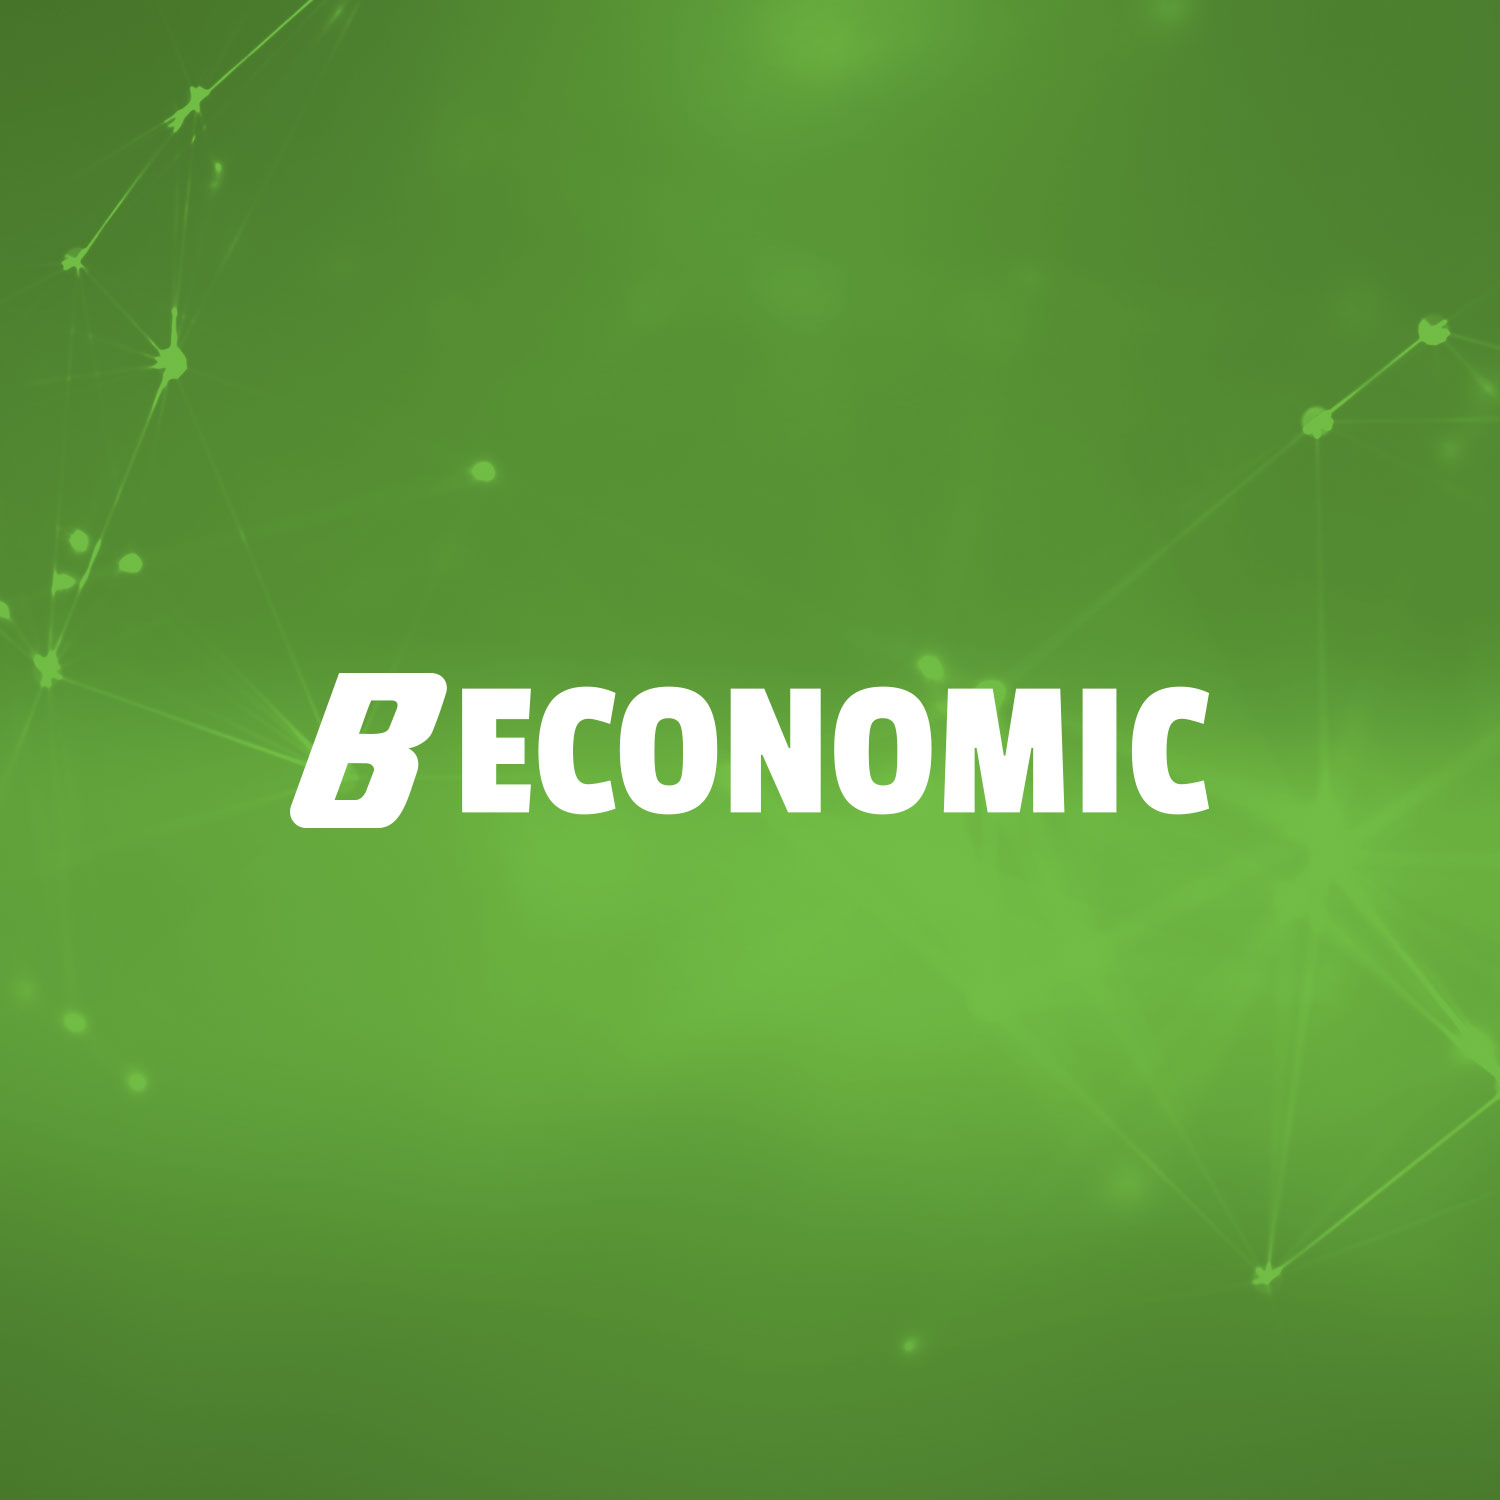 B Economic